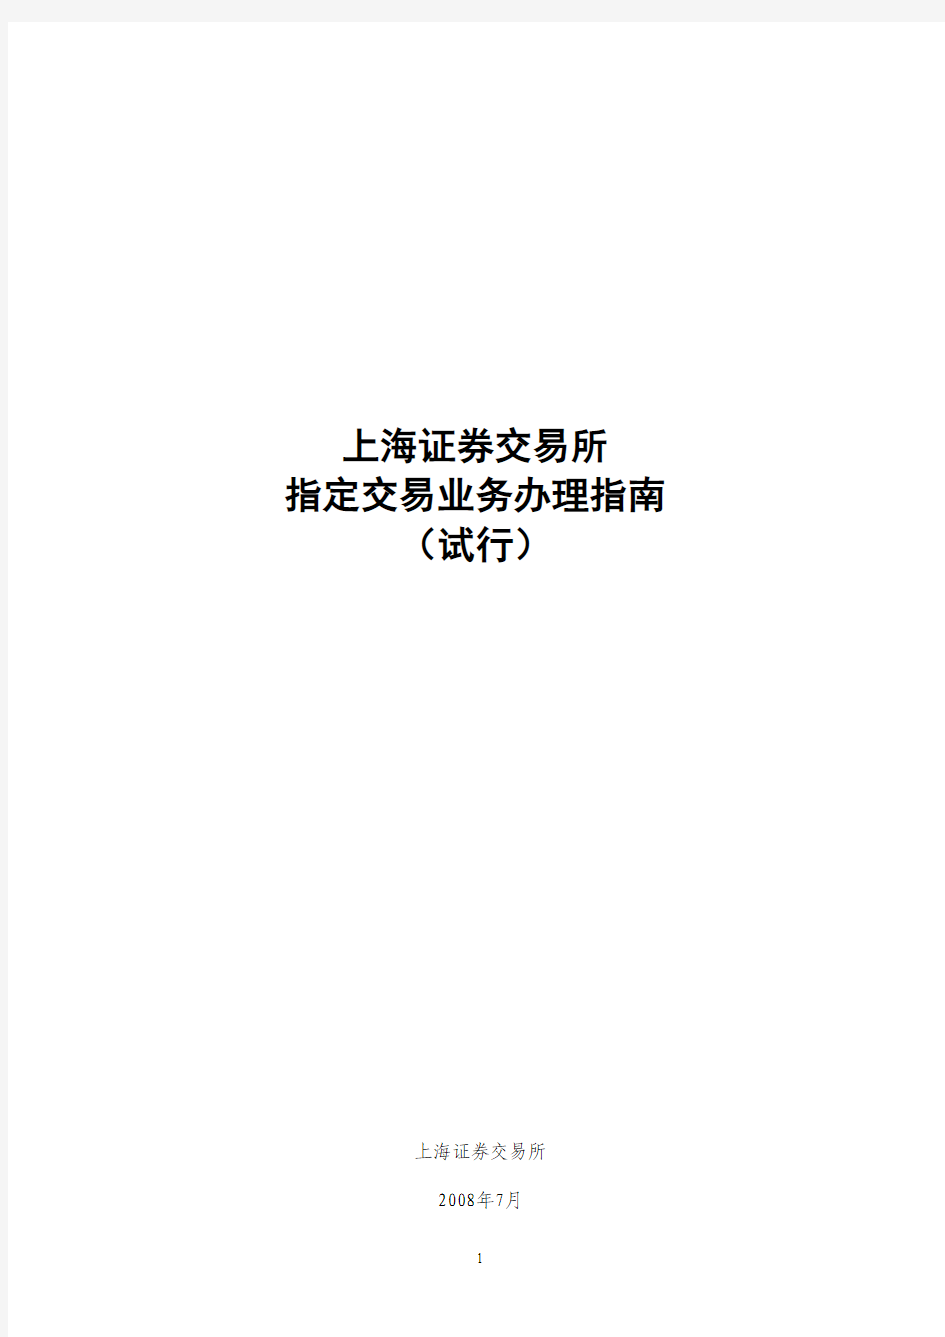 上海证券交易所指定交易业务办理指南(试行)